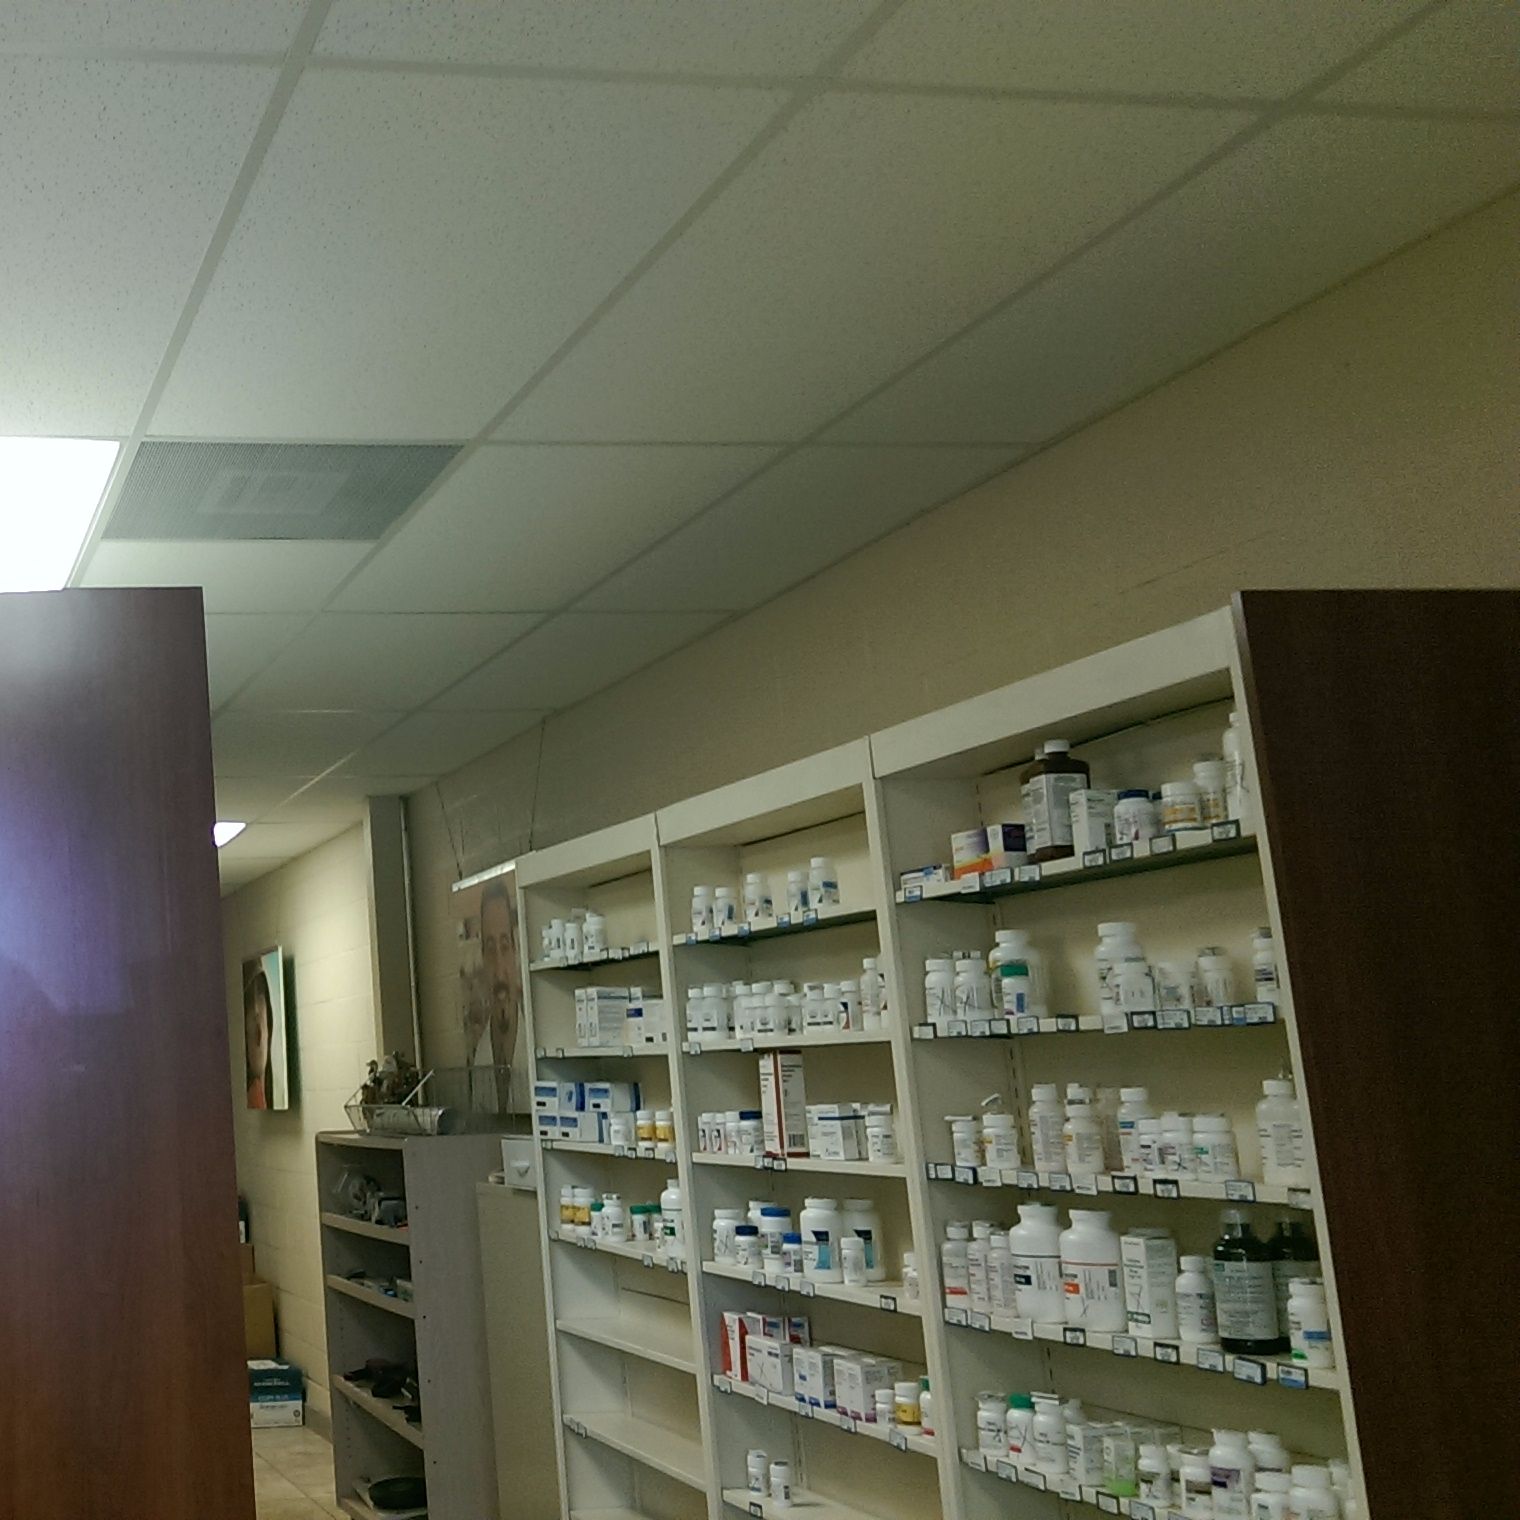 Saddlebrook Pharmacy